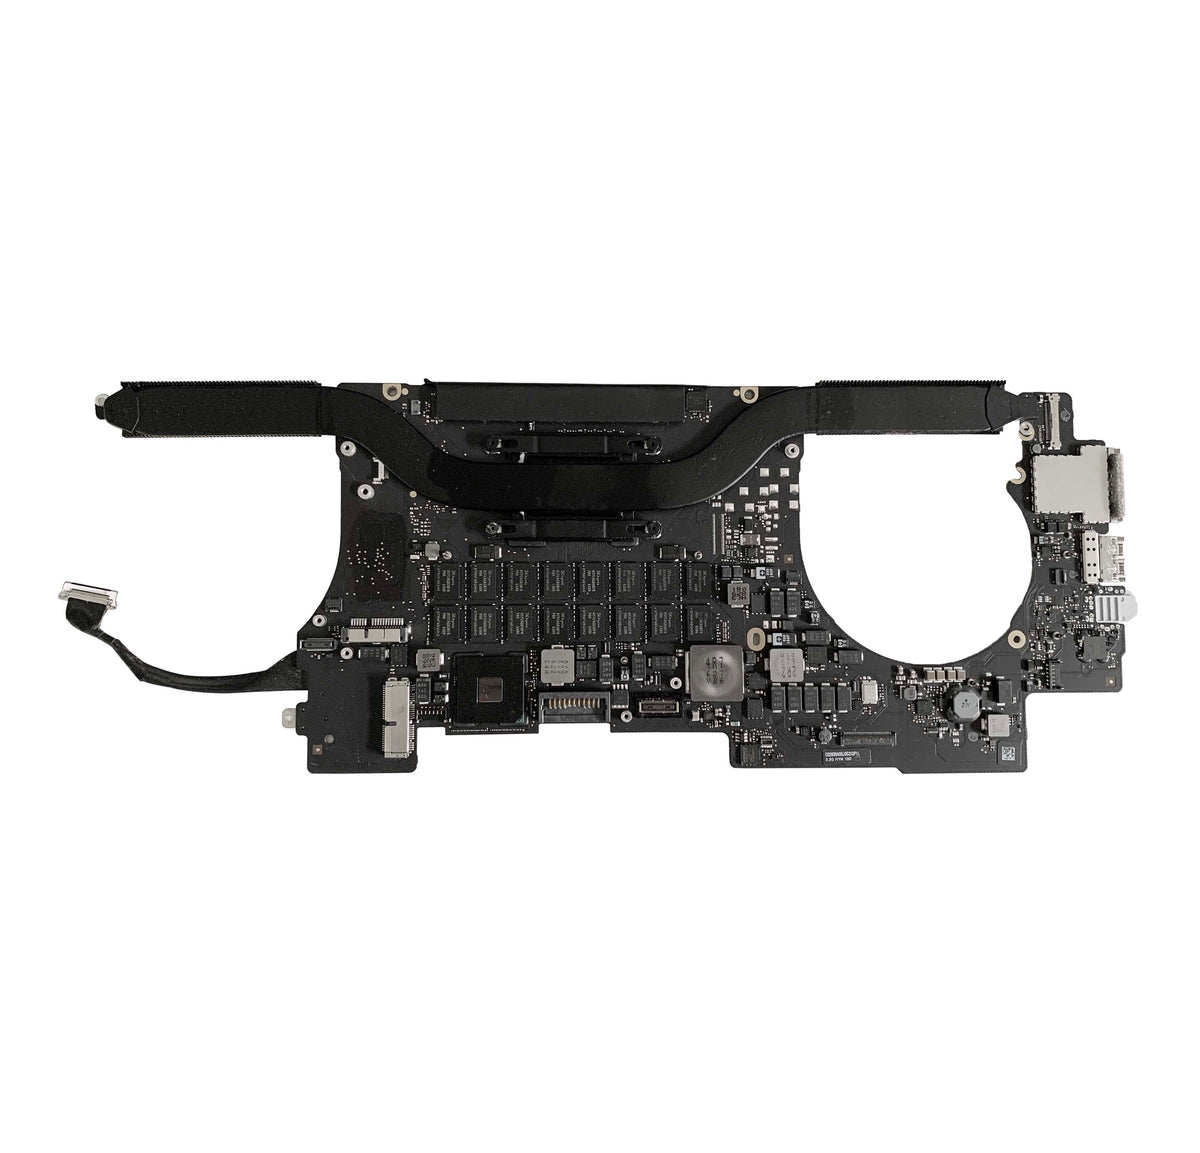 Macbook Pro 15 inch 2014 Retina (A1398) Logic Board - 2.5GHZ Core i7